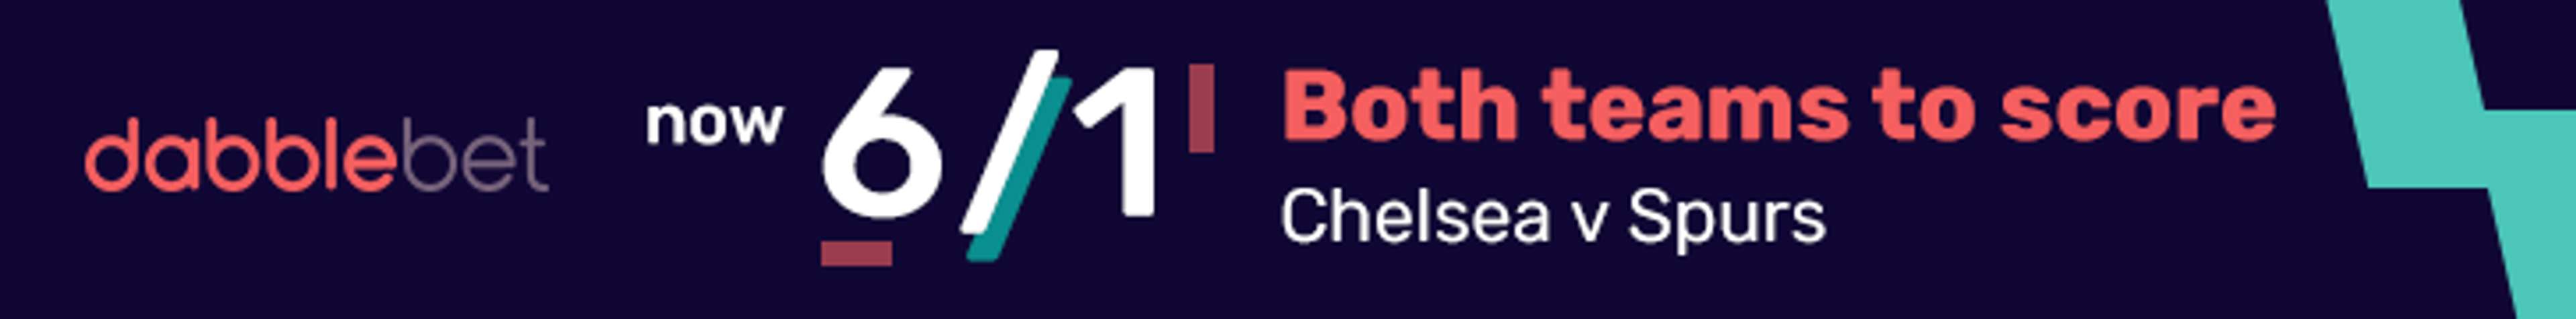 dabblebet enhanced new customer offer 6/1 BTTS Chelsea v Tottenham footer